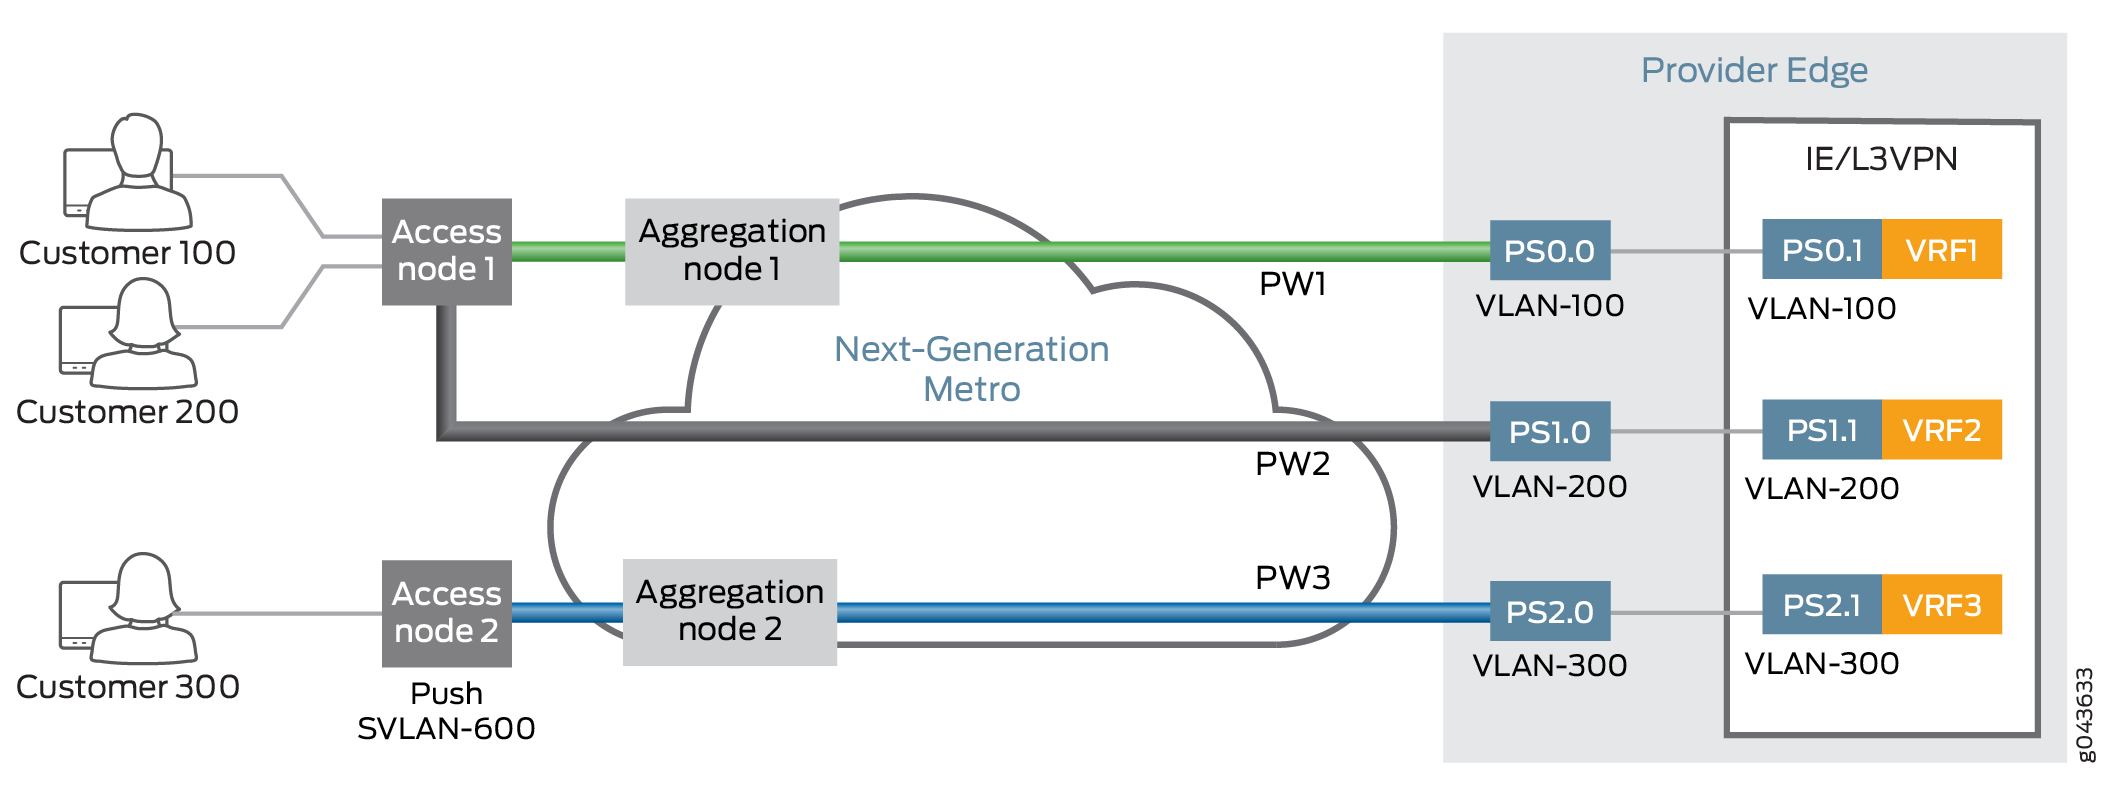 Interfaz lógica de transporte del cliente Pseudowire desde el nodo de acceso